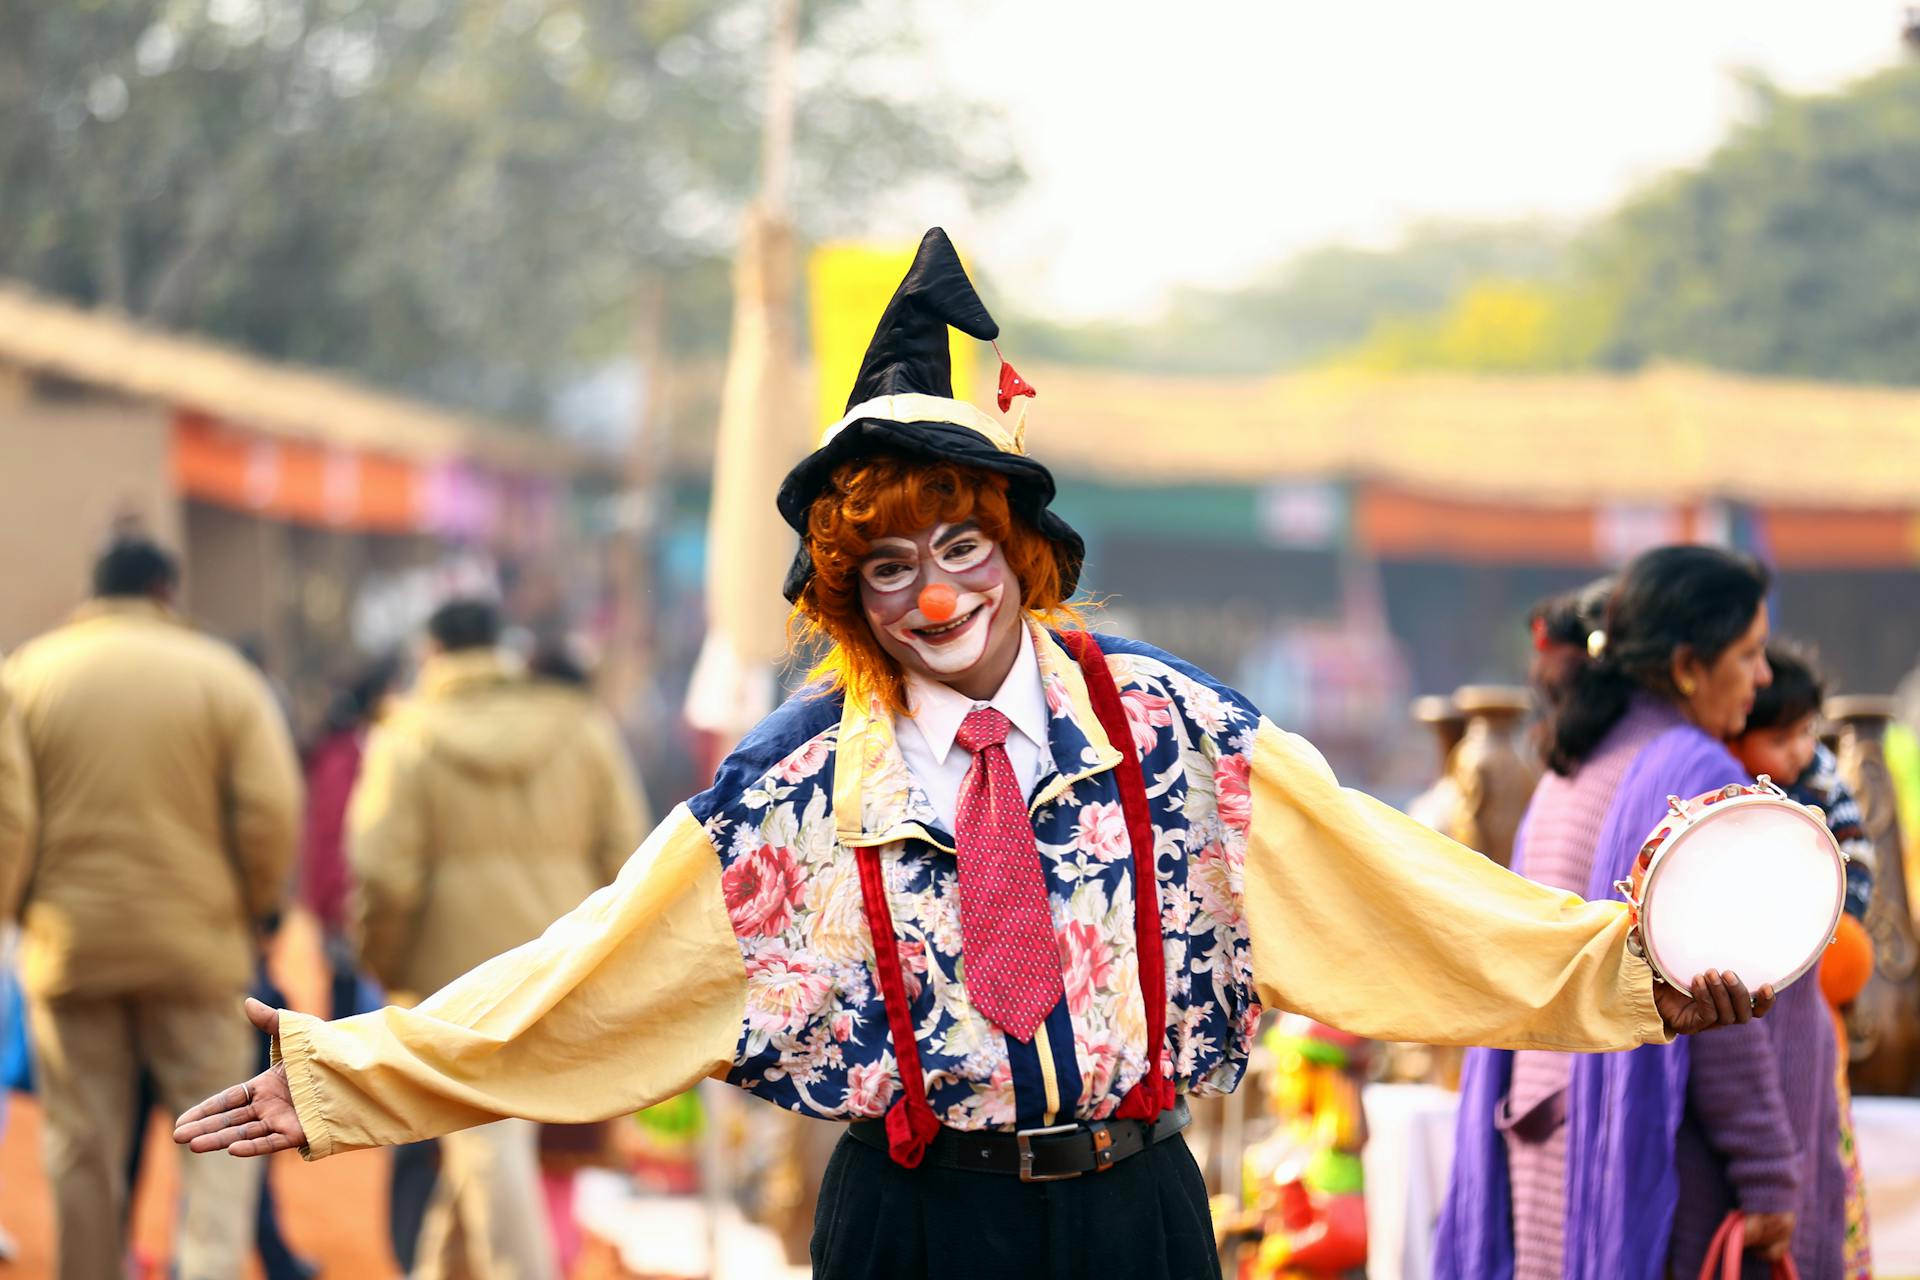 Un clown dans un cirque | Source : Pexels